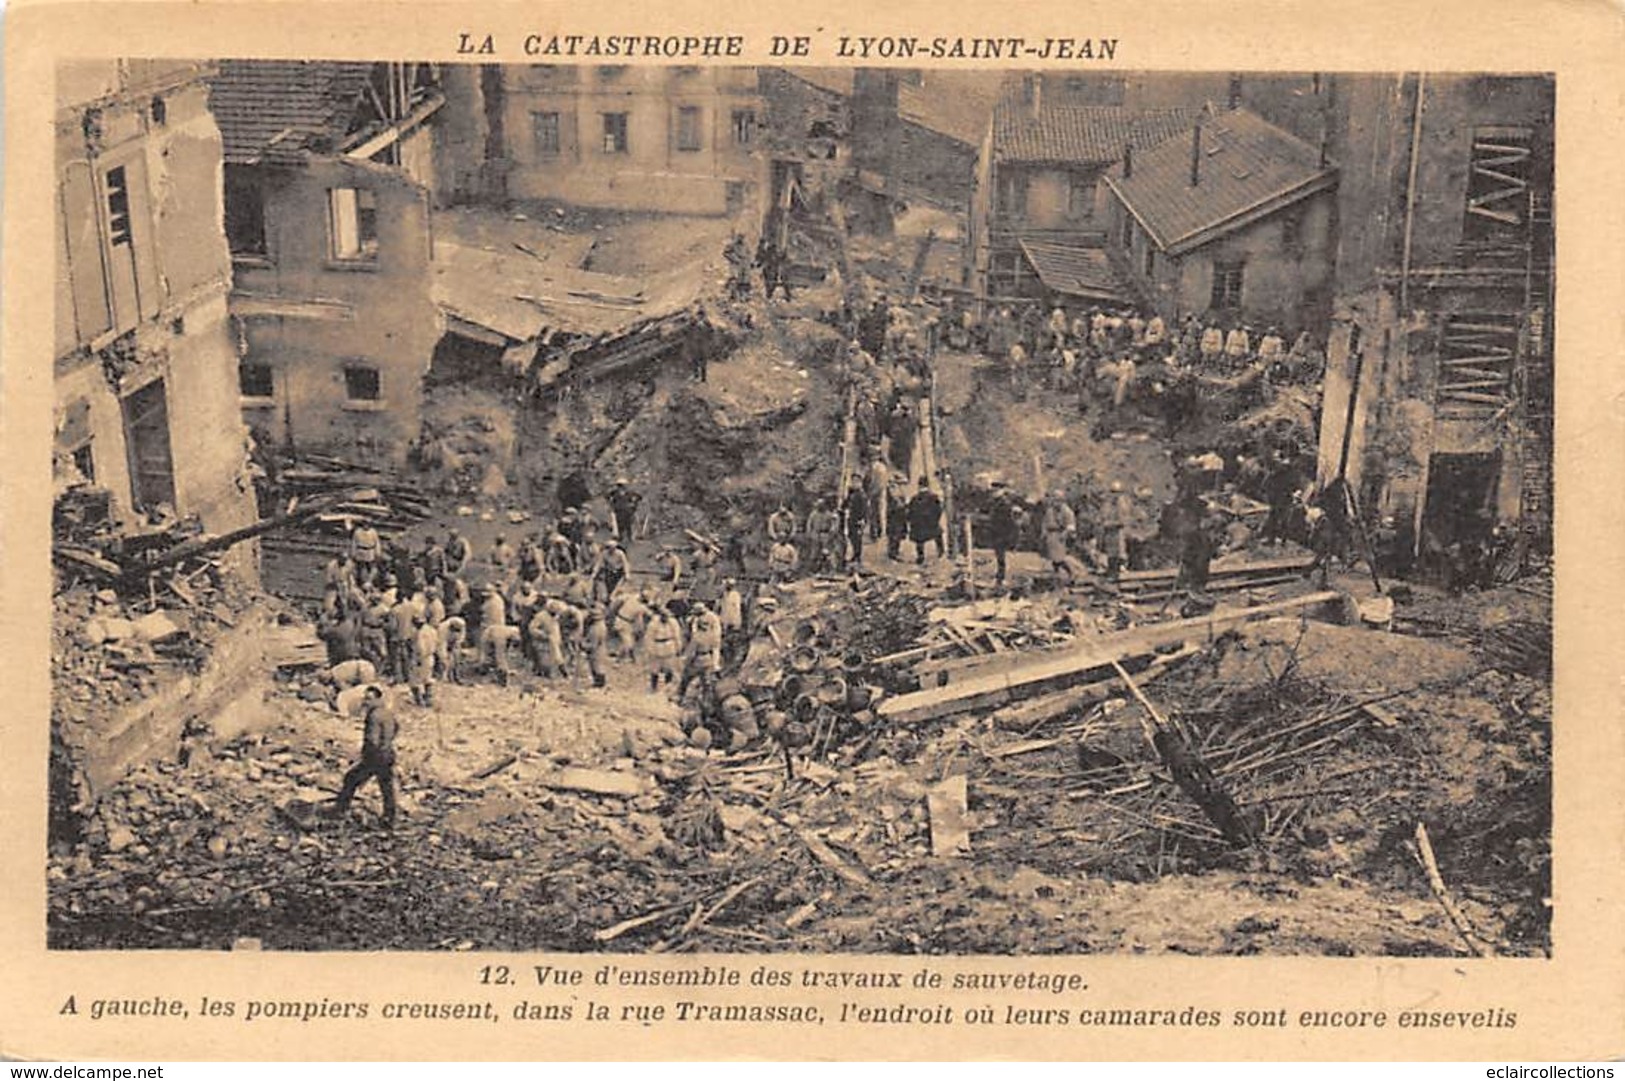 Lyon          69       Lot de   6 cartes : Catastrophe de Lyon-Saint Jean        (voir scan)